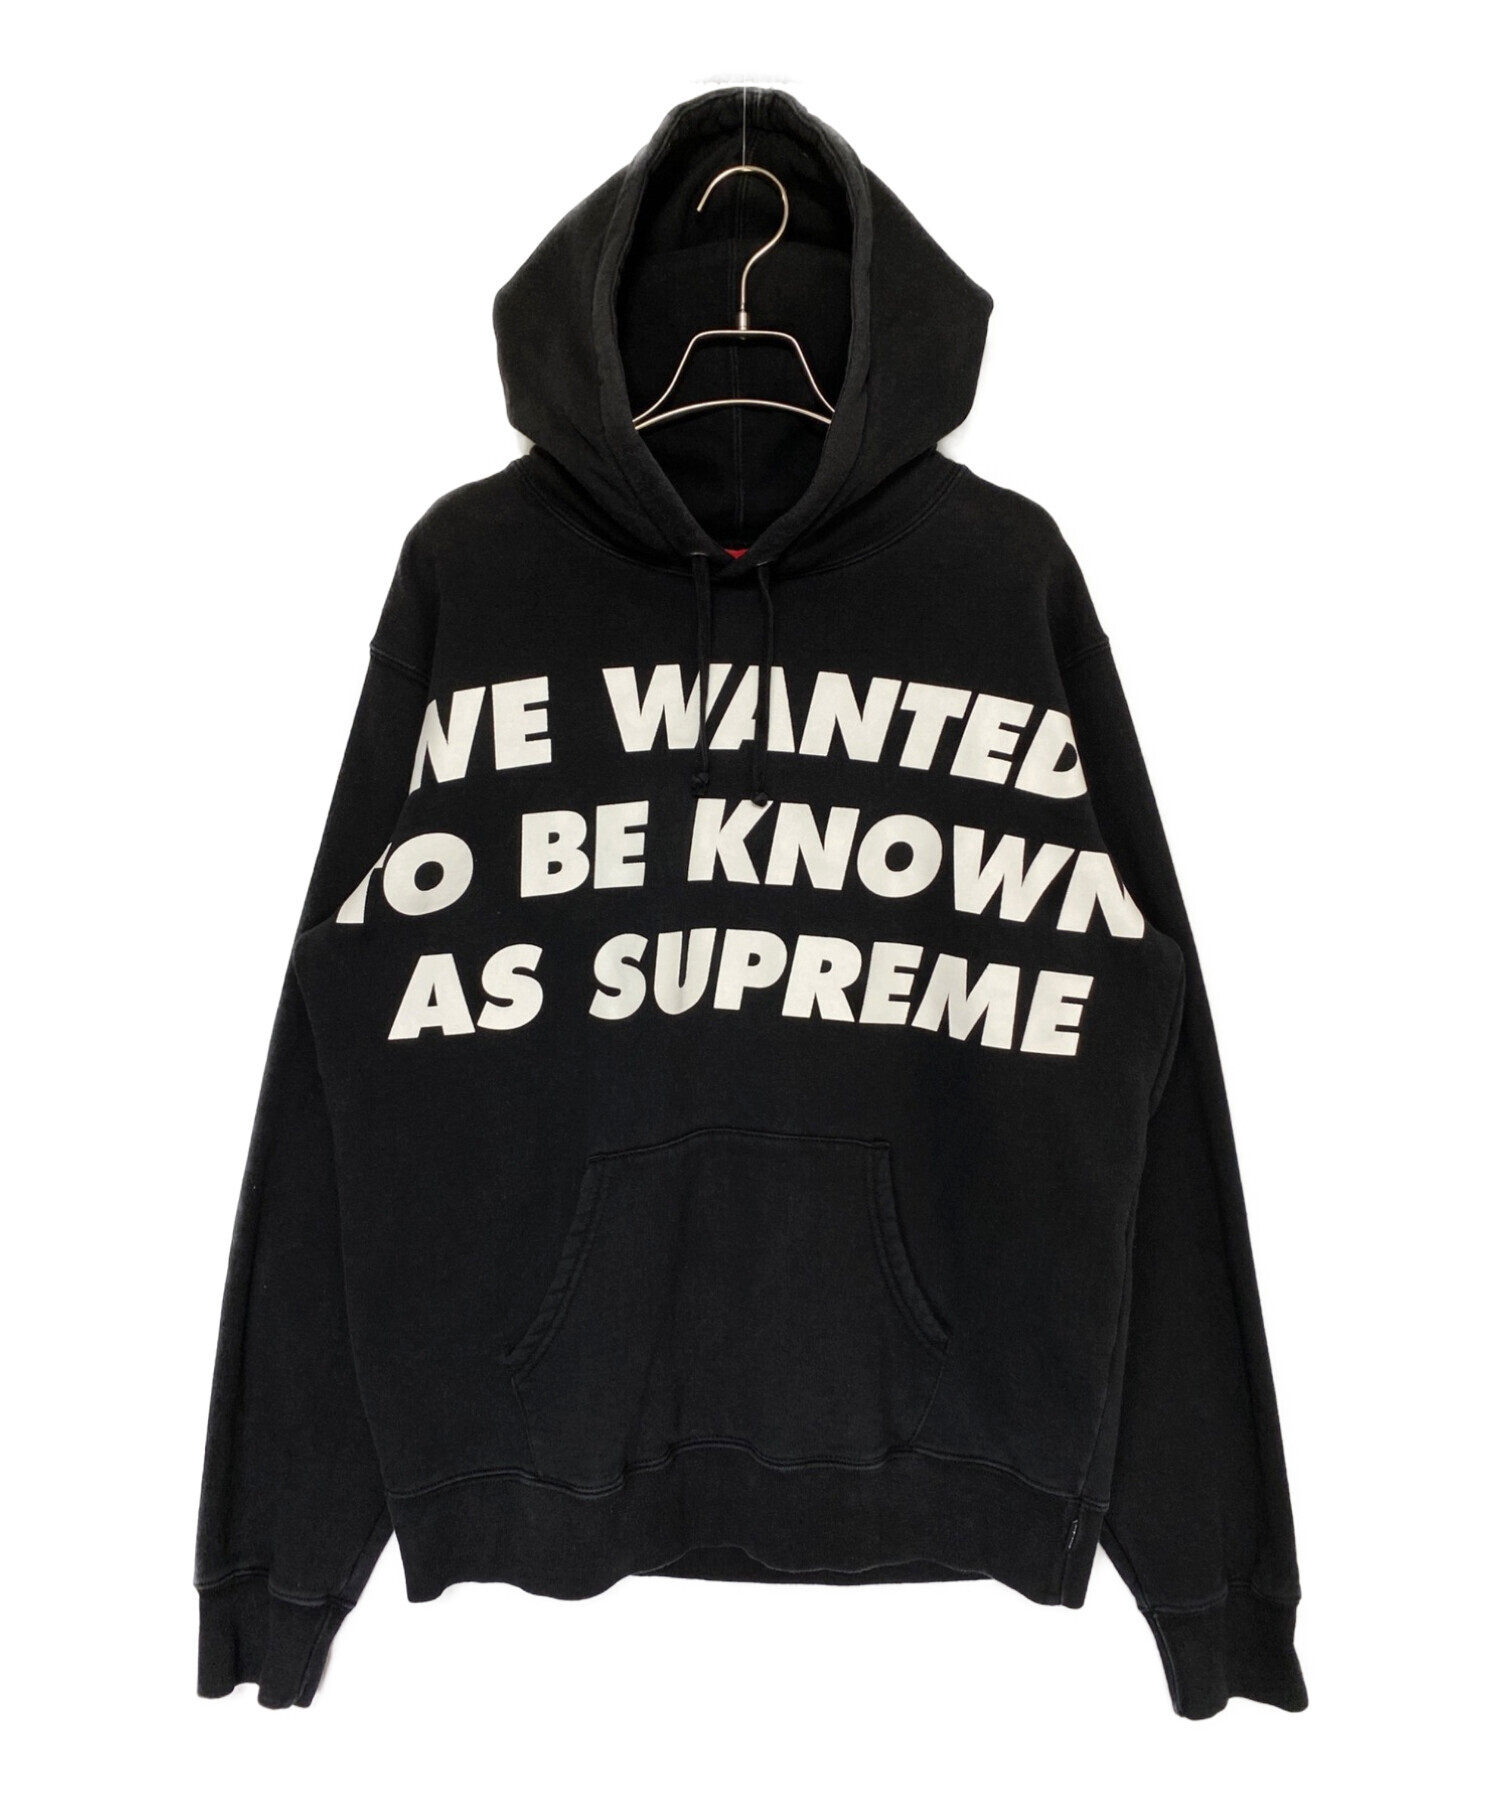 SUPREME (シュプリーム) Know As Hooded Sweatshirts ブラック サイズ:M